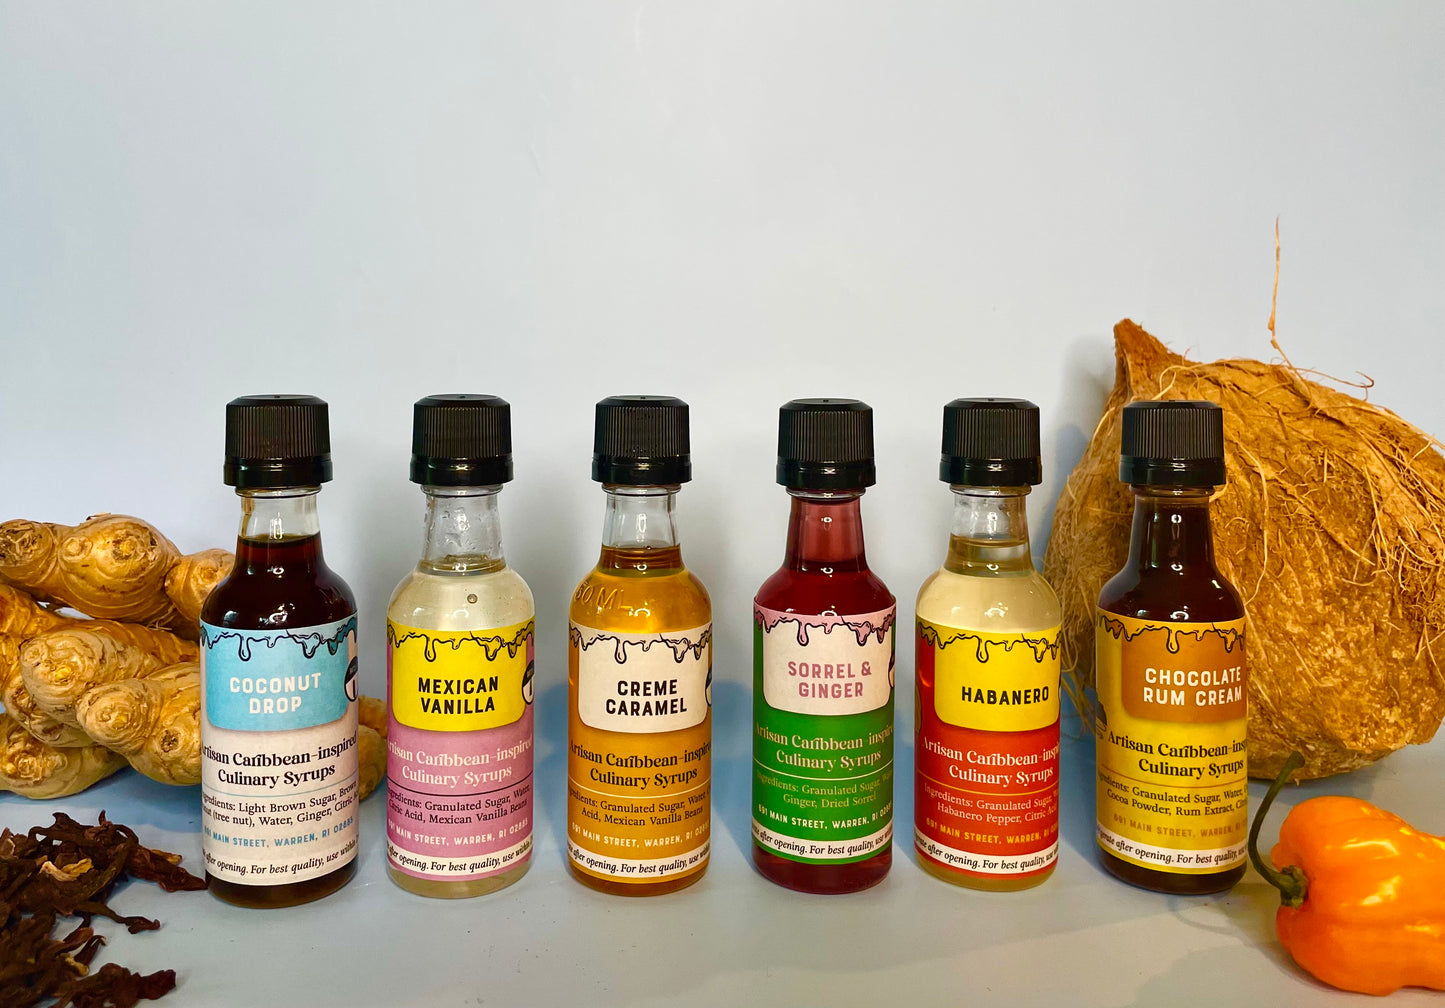 Flavored Syrup Sampler Pack